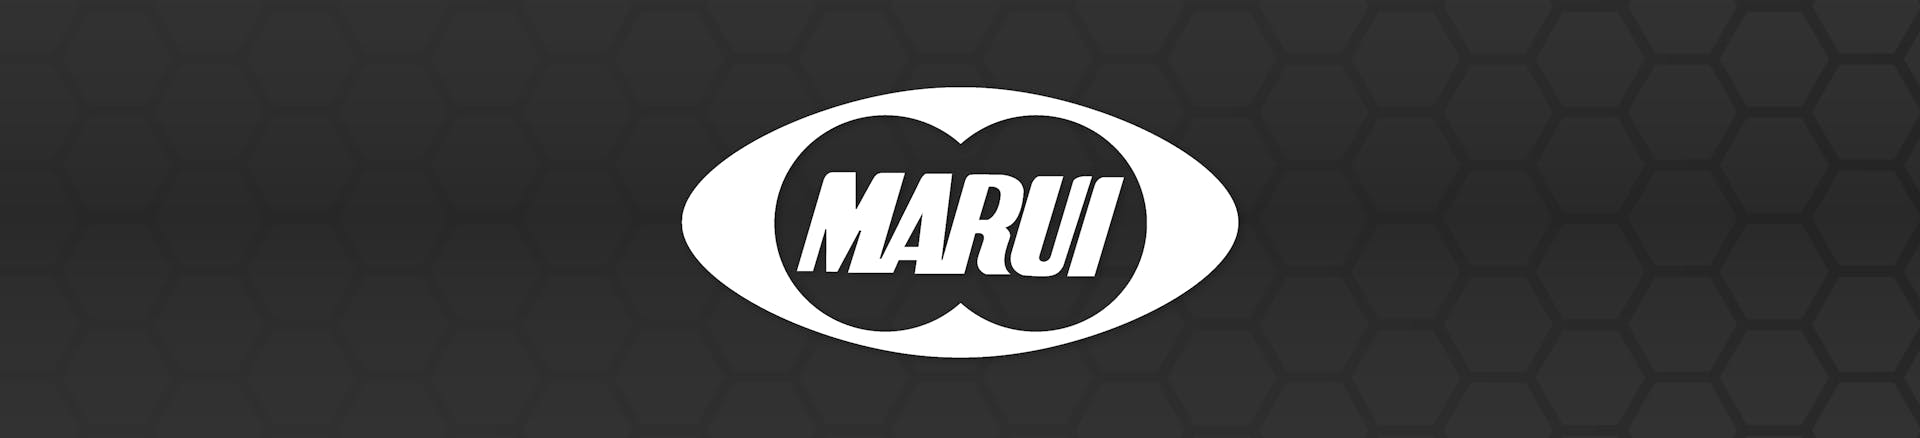 Tokyo Marui Brand